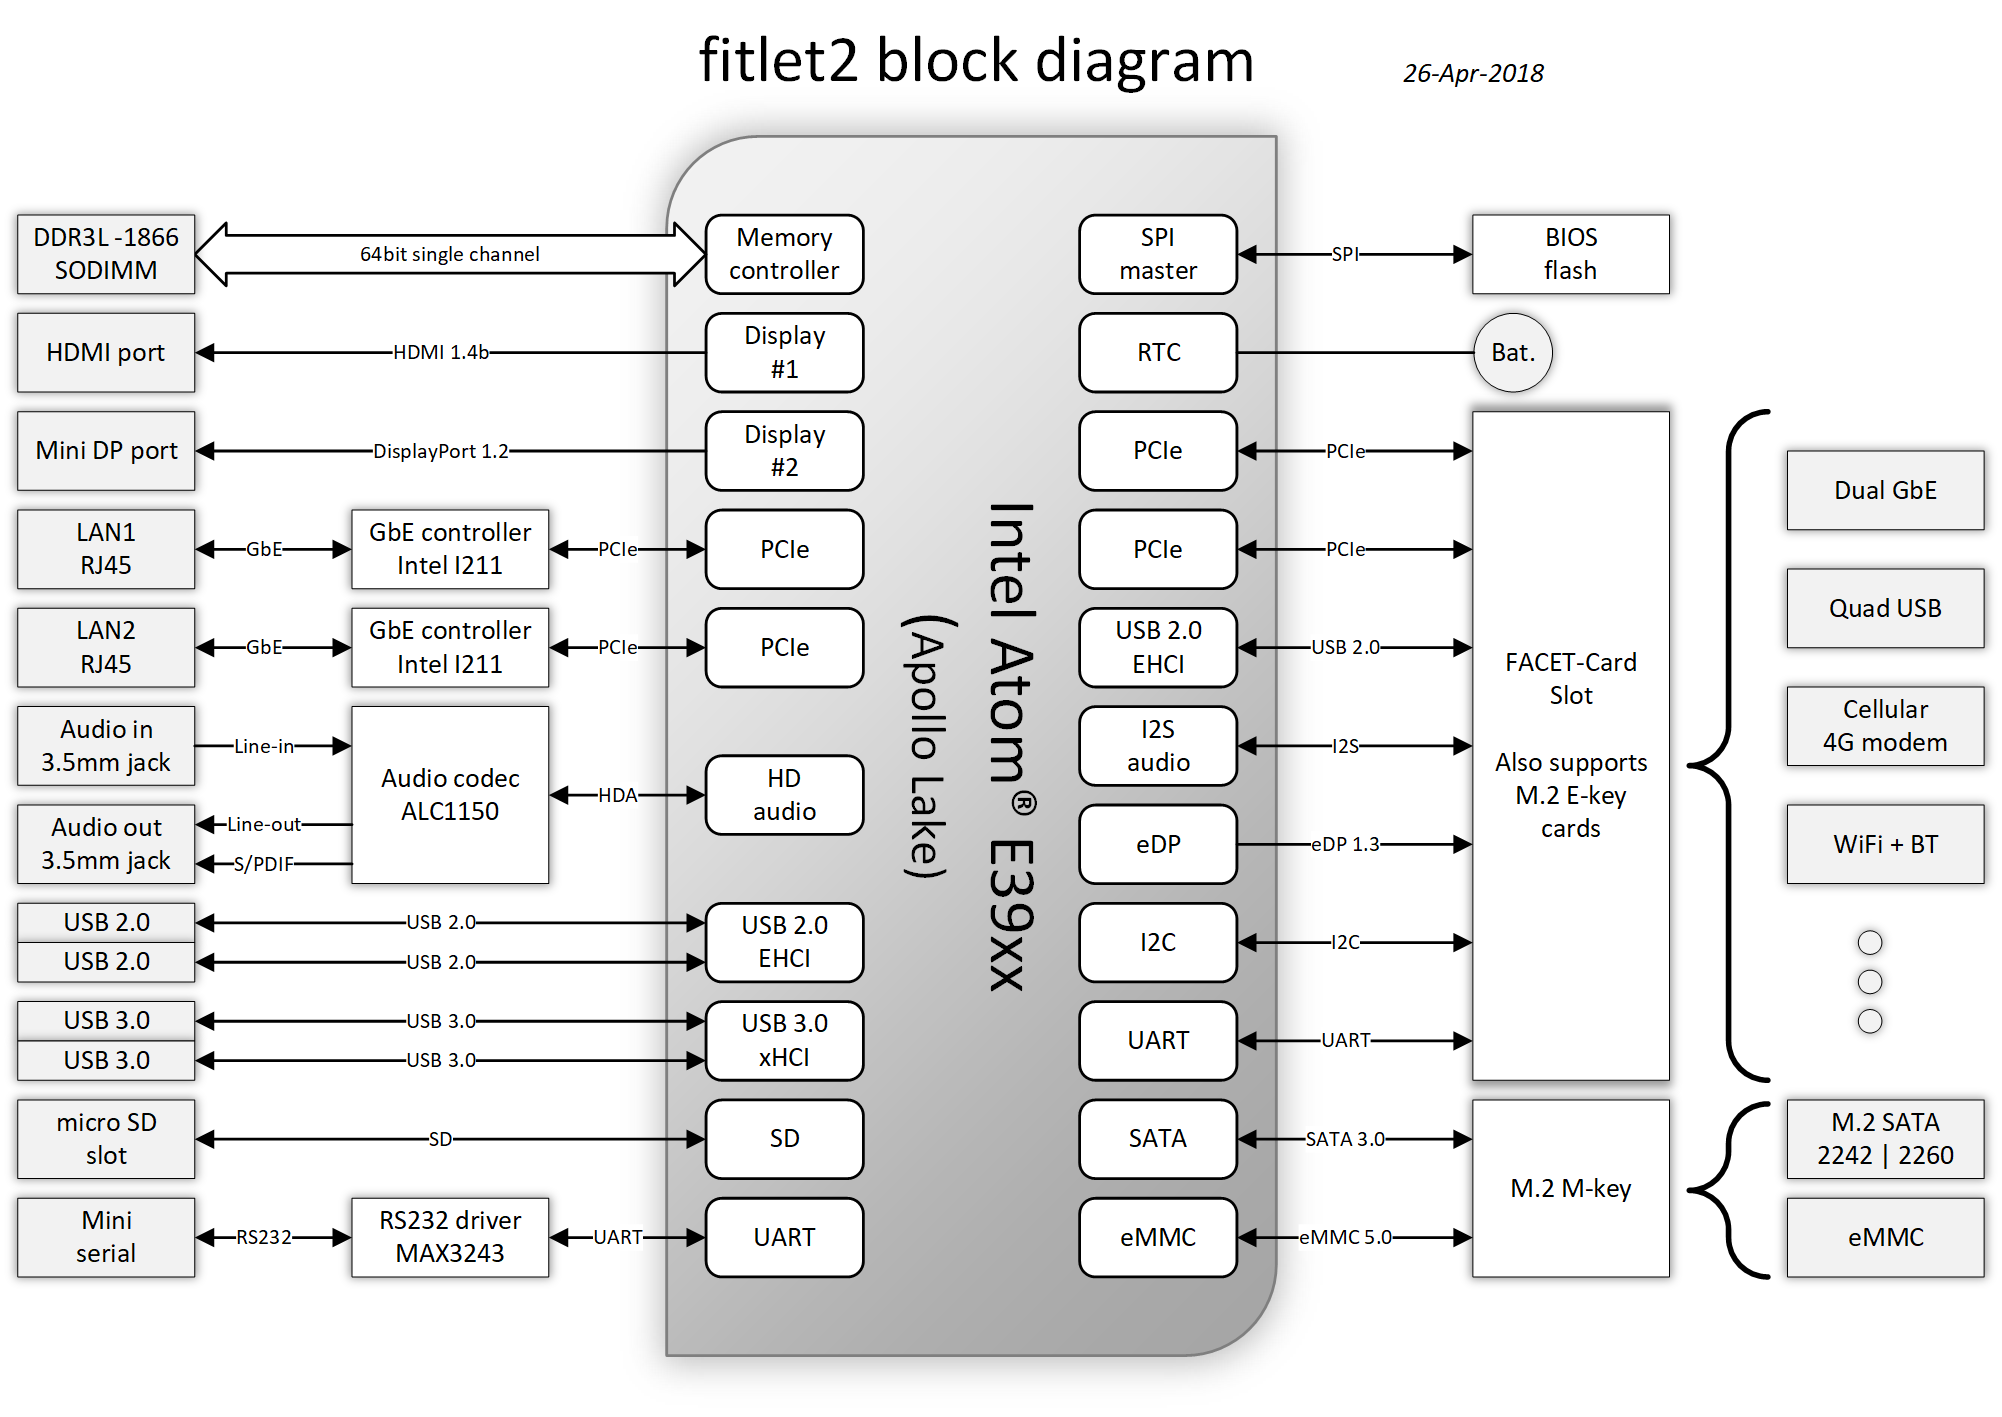 fitlet2-block-diagram.png